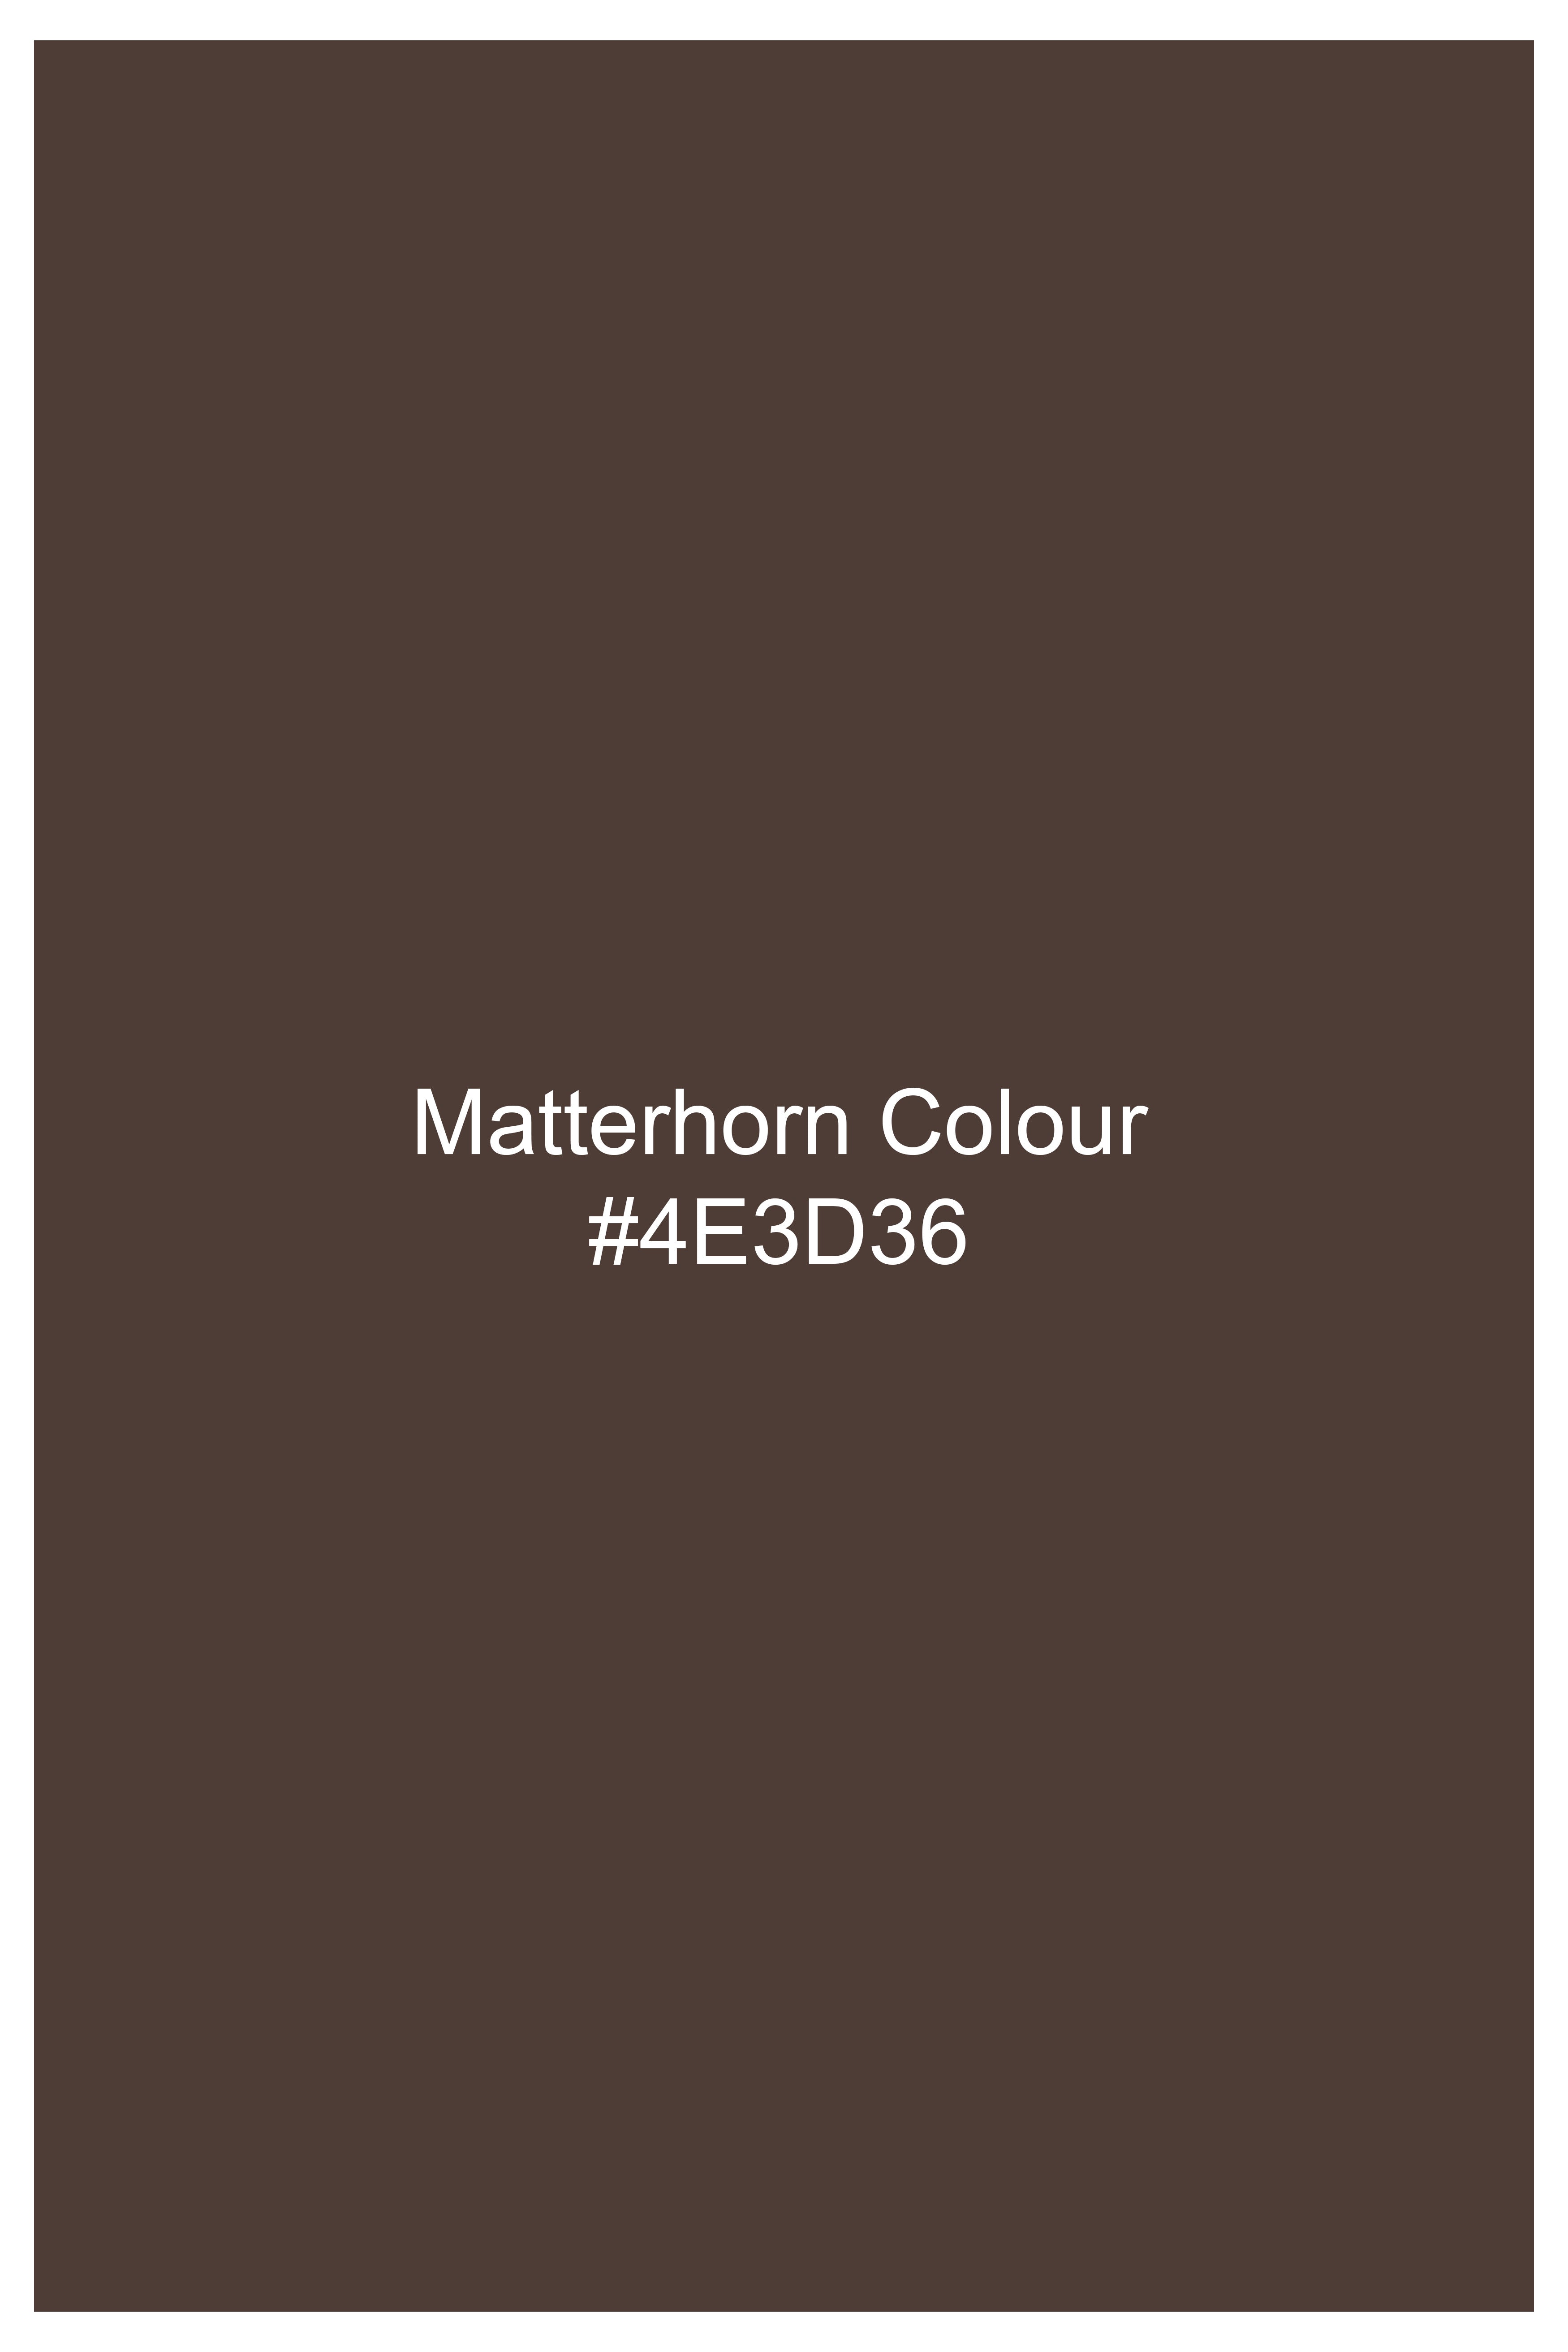 Matterhorn Brown Subtle Checkered Wool Rich Suit ST3122-SBP-36, ST3122-SBP-38, ST3122-SBP-40, ST3122-SBP-42, ST3122-SBP-44, ST3122-SBP-46, ST3122-SBP-48, ST3122-SBP-50, ST3122-SBP-52, ST3122-SBP-54, ST3122-SBP-56, ST3122-SBP-58, ST3122-SBP-60